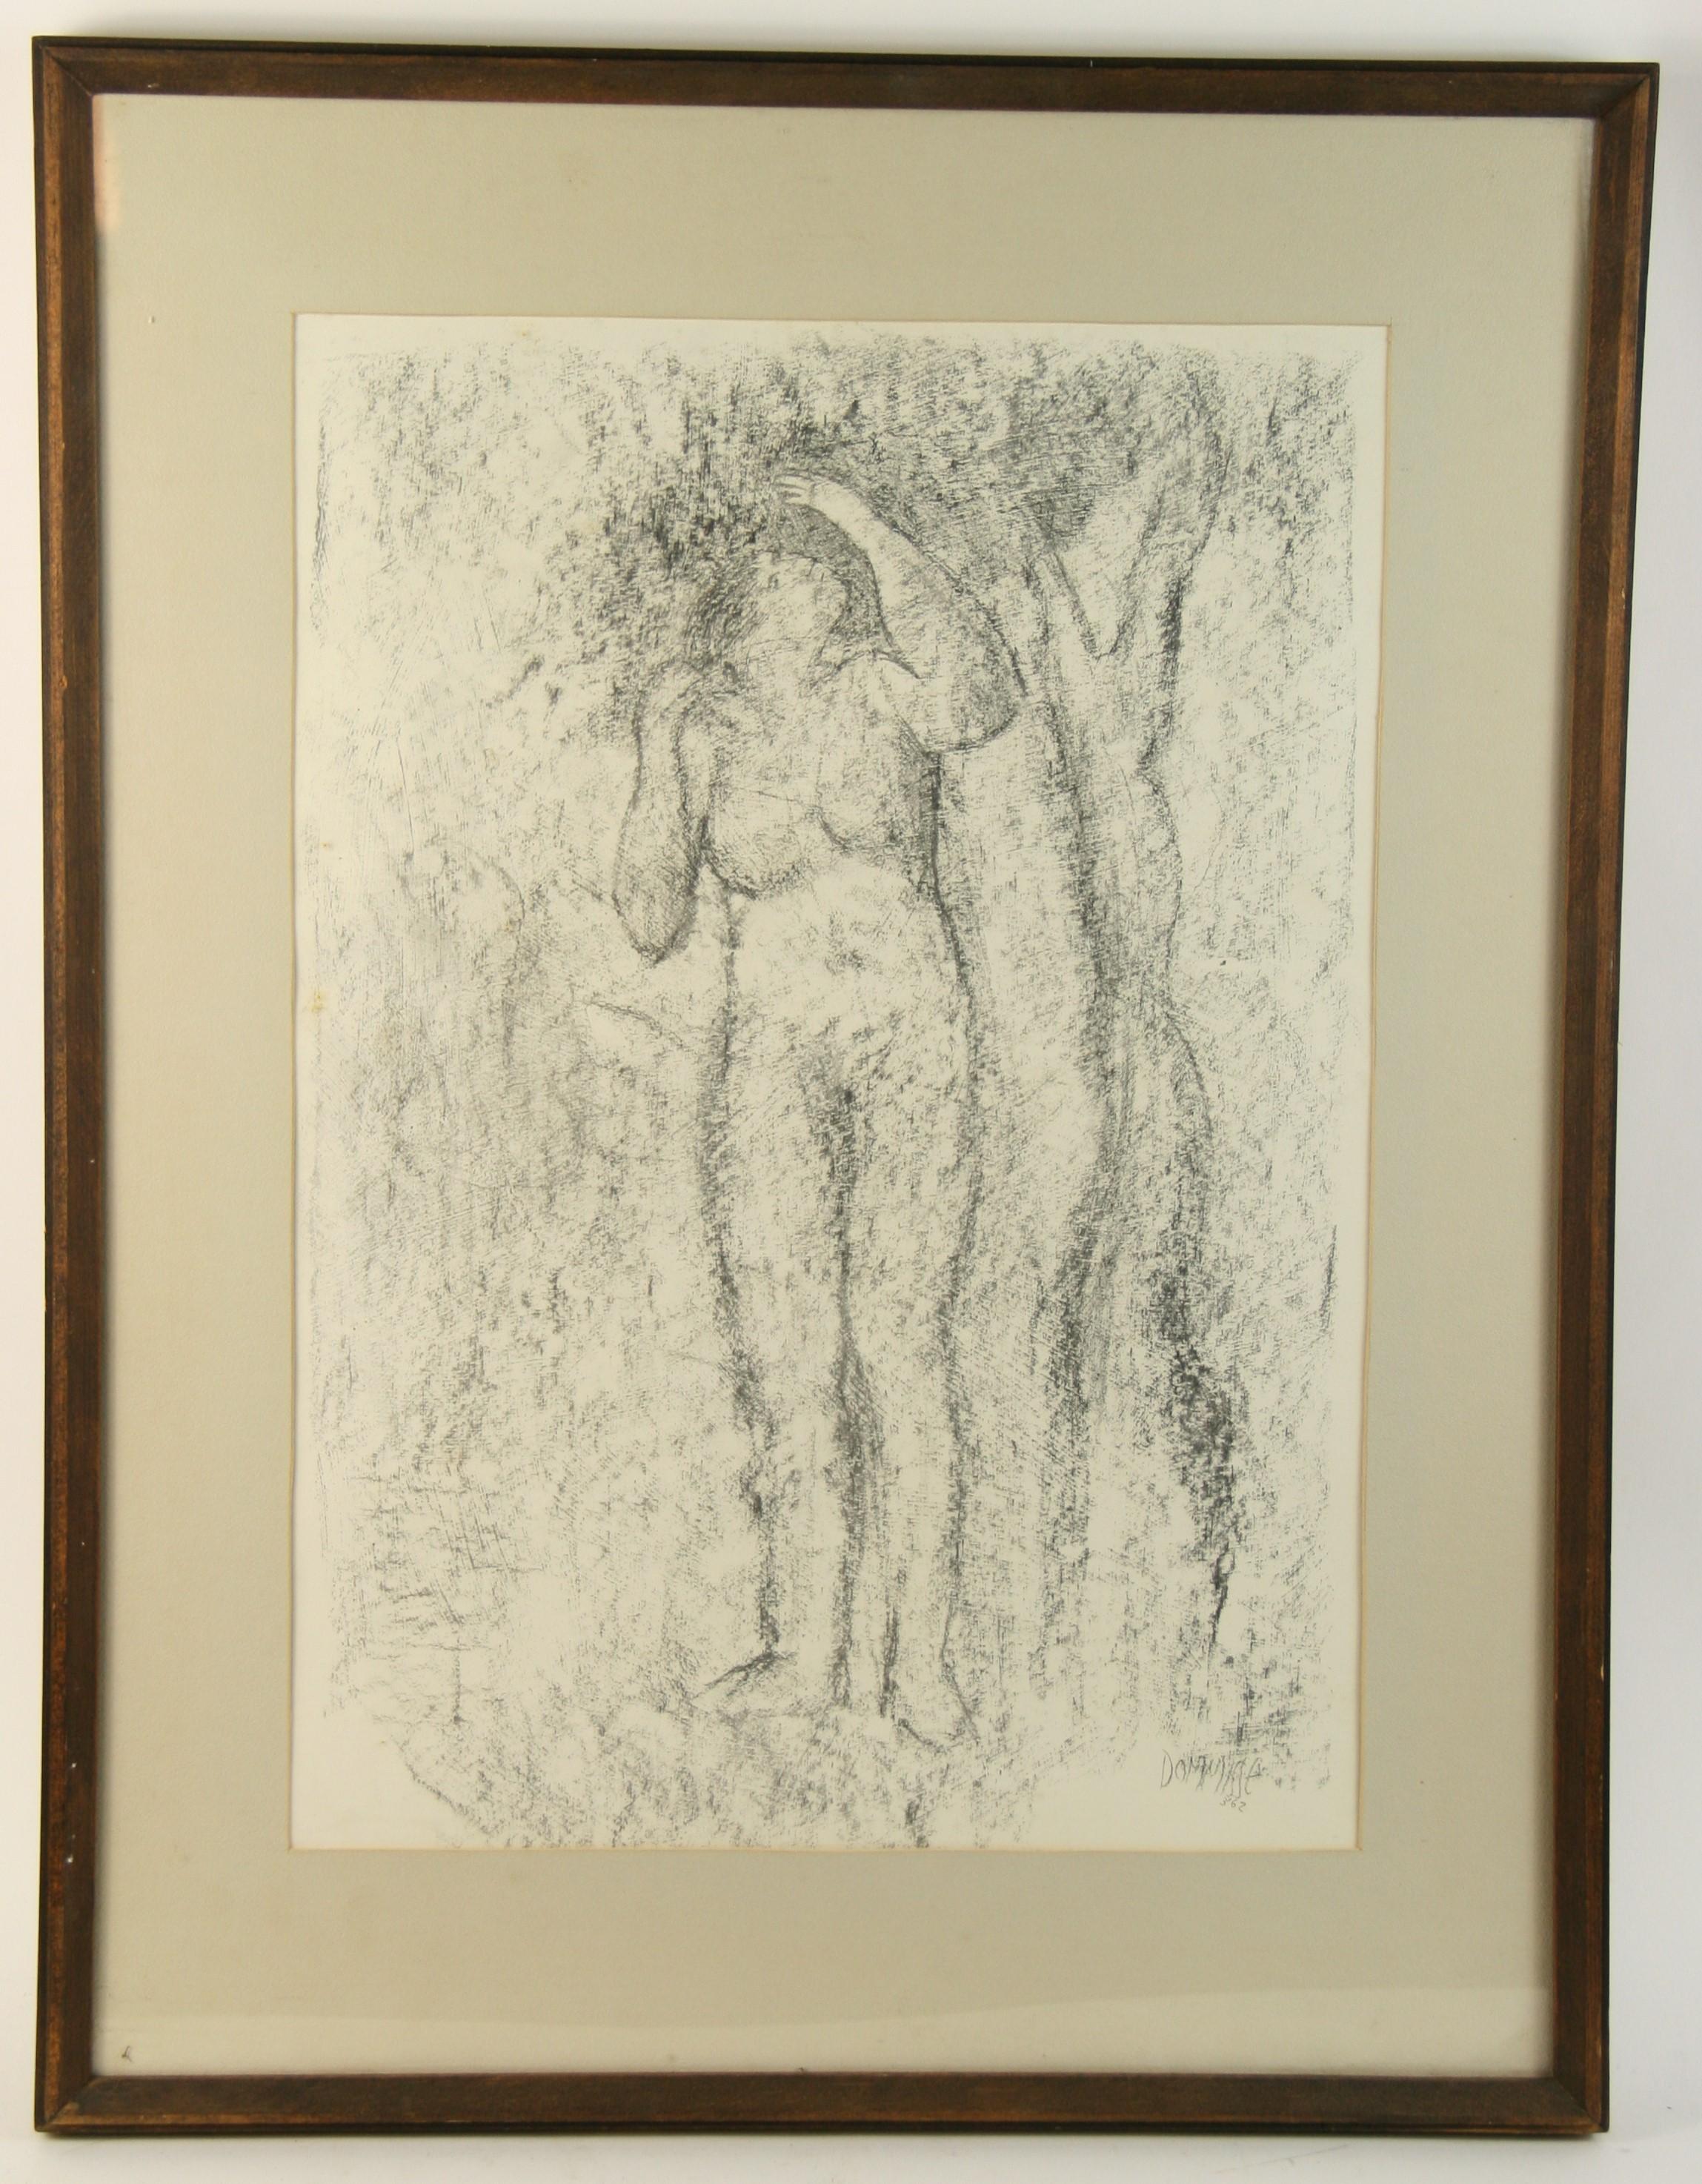 3761  Dessin d'une femme nue sous un arbre
Cadre en chêne massif
Taille de l'image 15x22
Signé Dommisse 62 